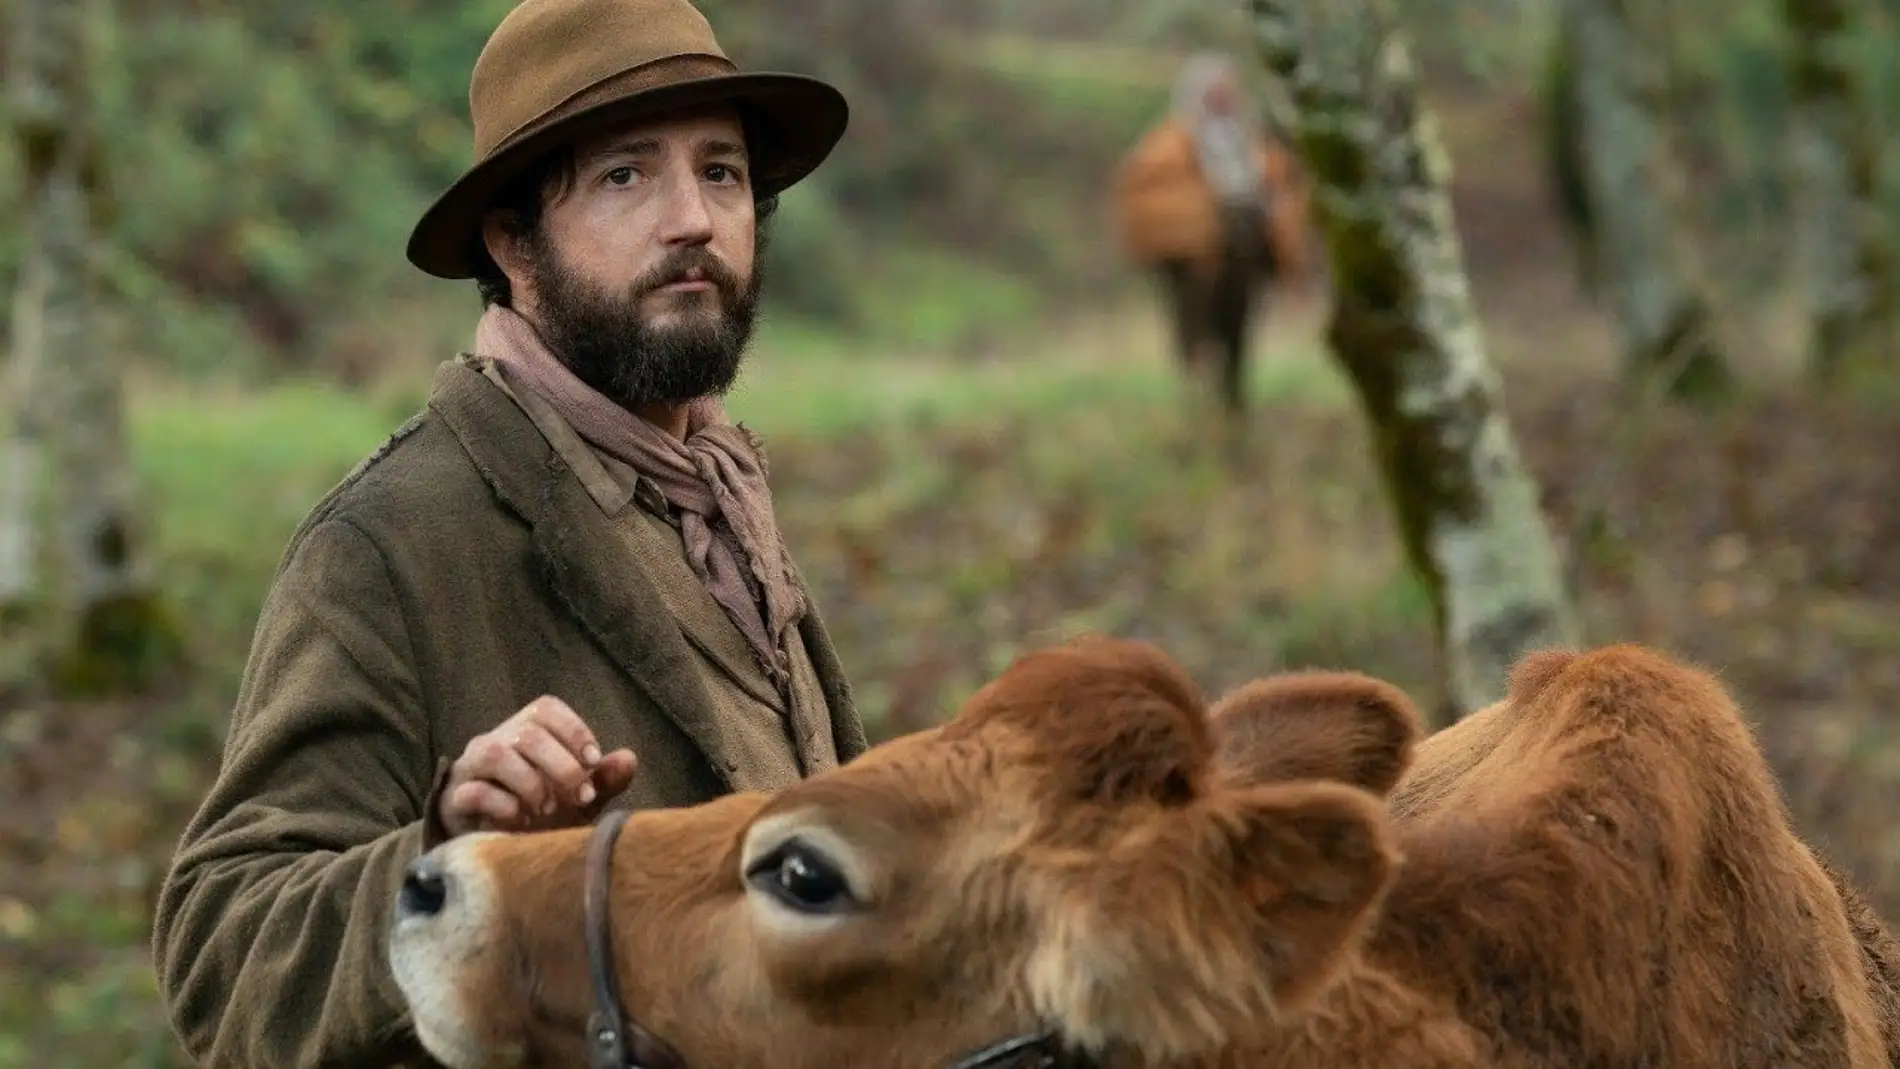 Imagen promocional de la película 'First cow', con el actor John Magaro y la vaca protagonista de la cinta